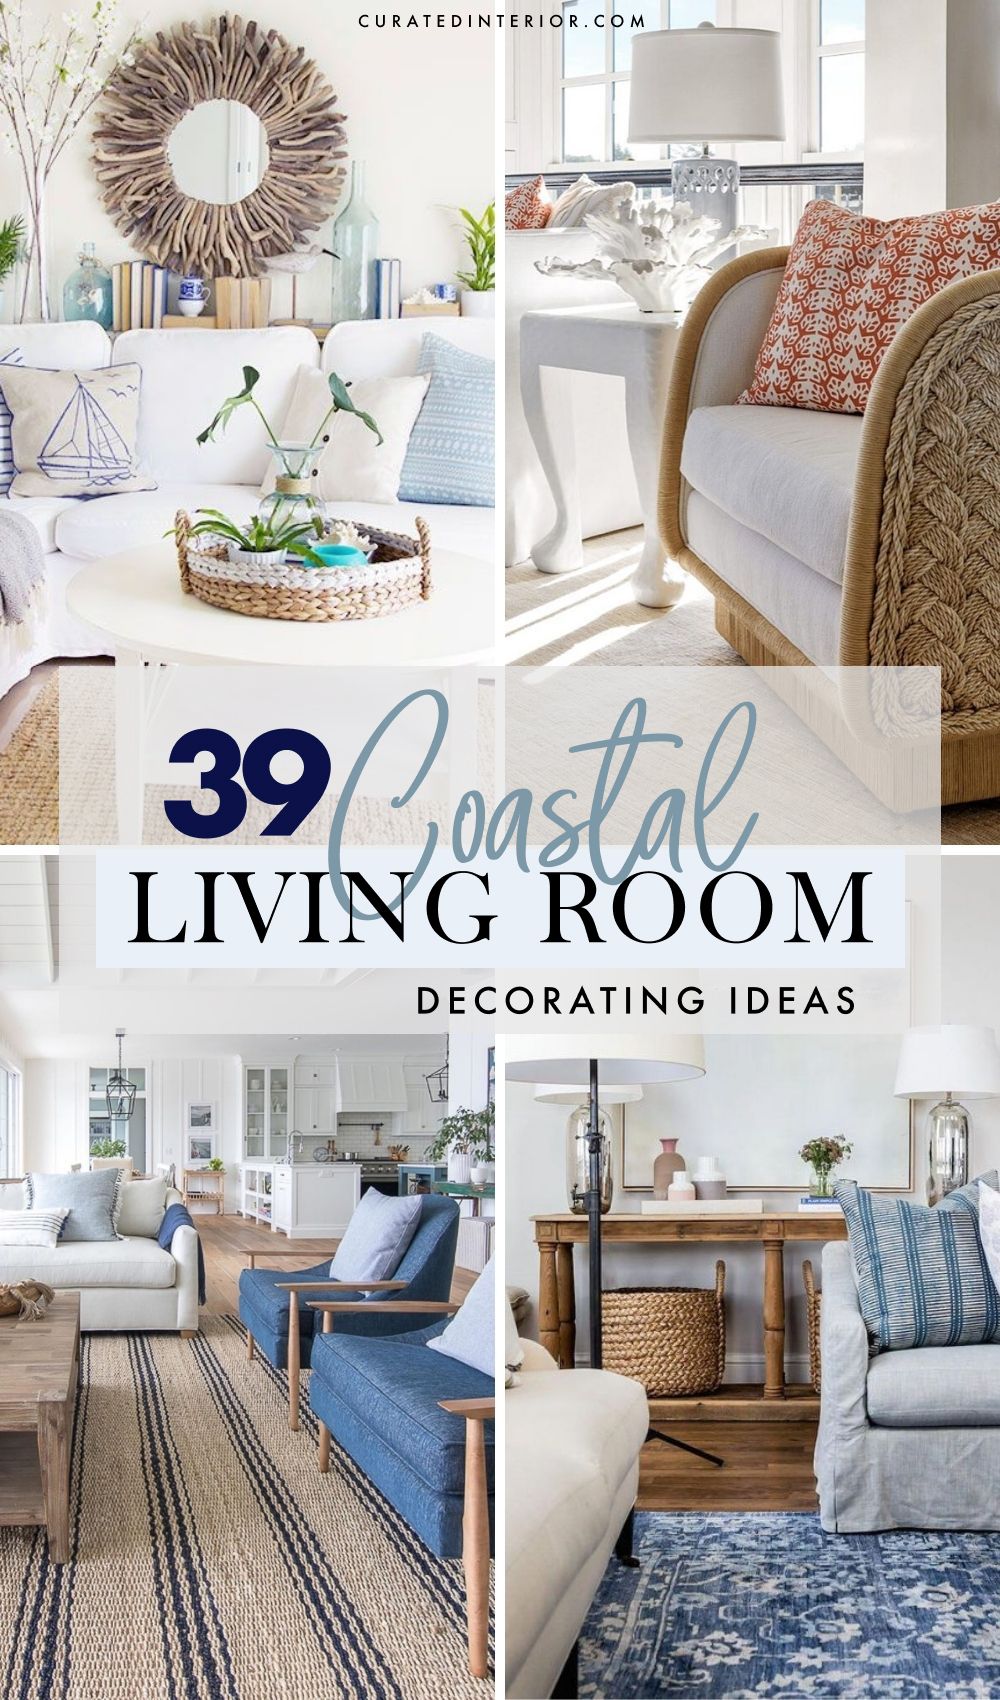 18 Coastal Living Room Ideas to Inspire You